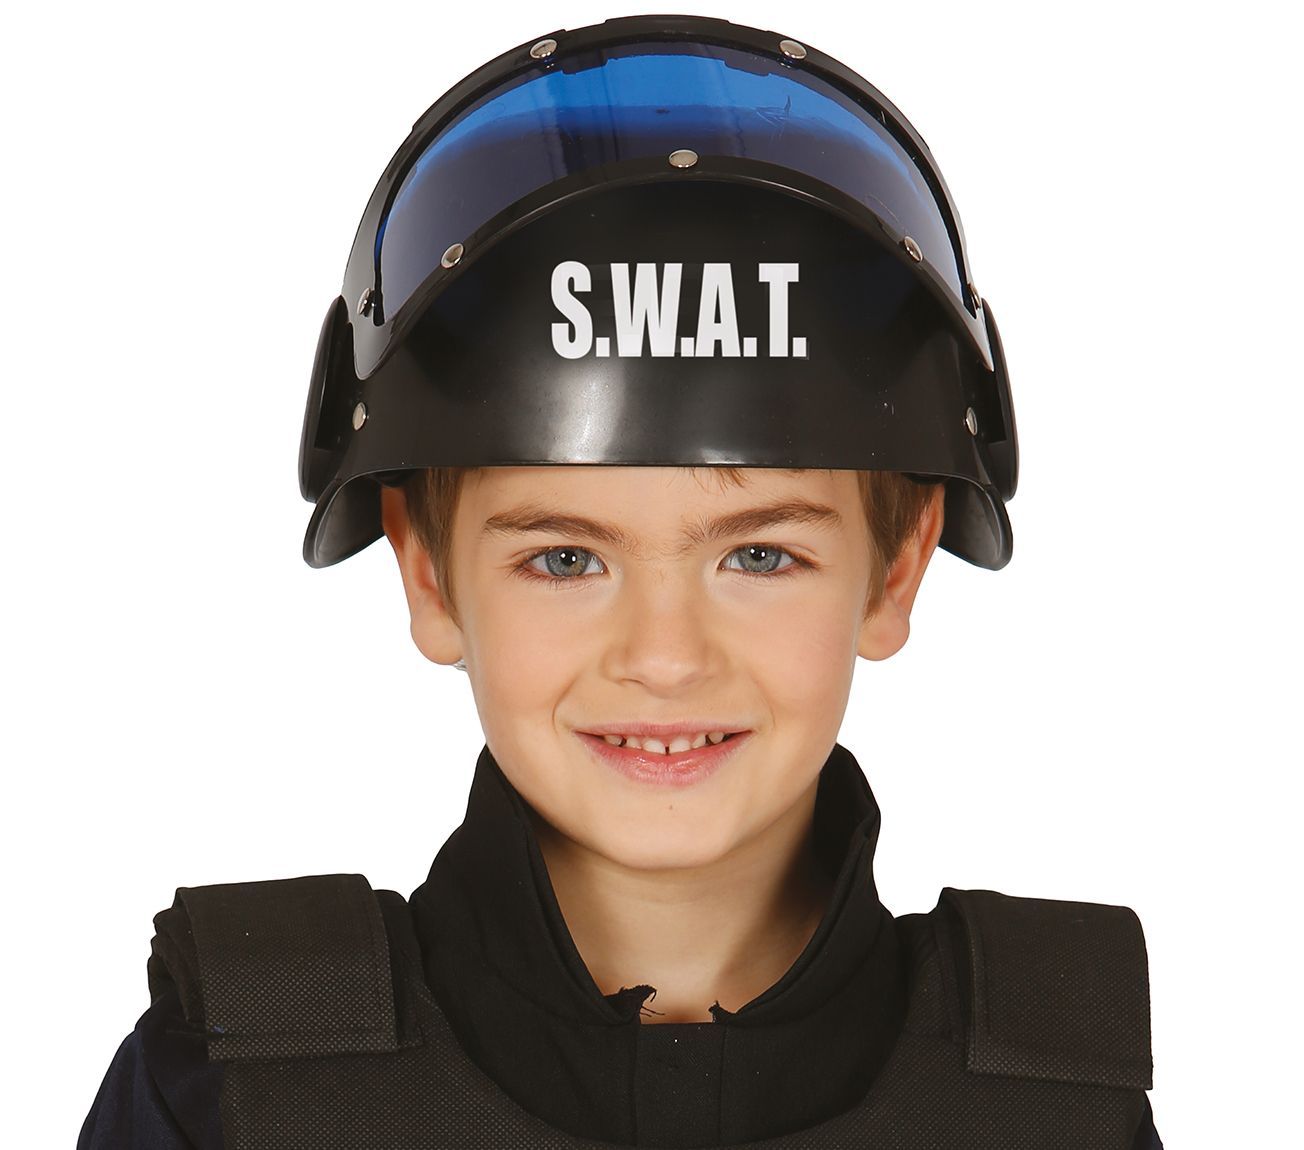 SWAT helm met blauw vizier kind